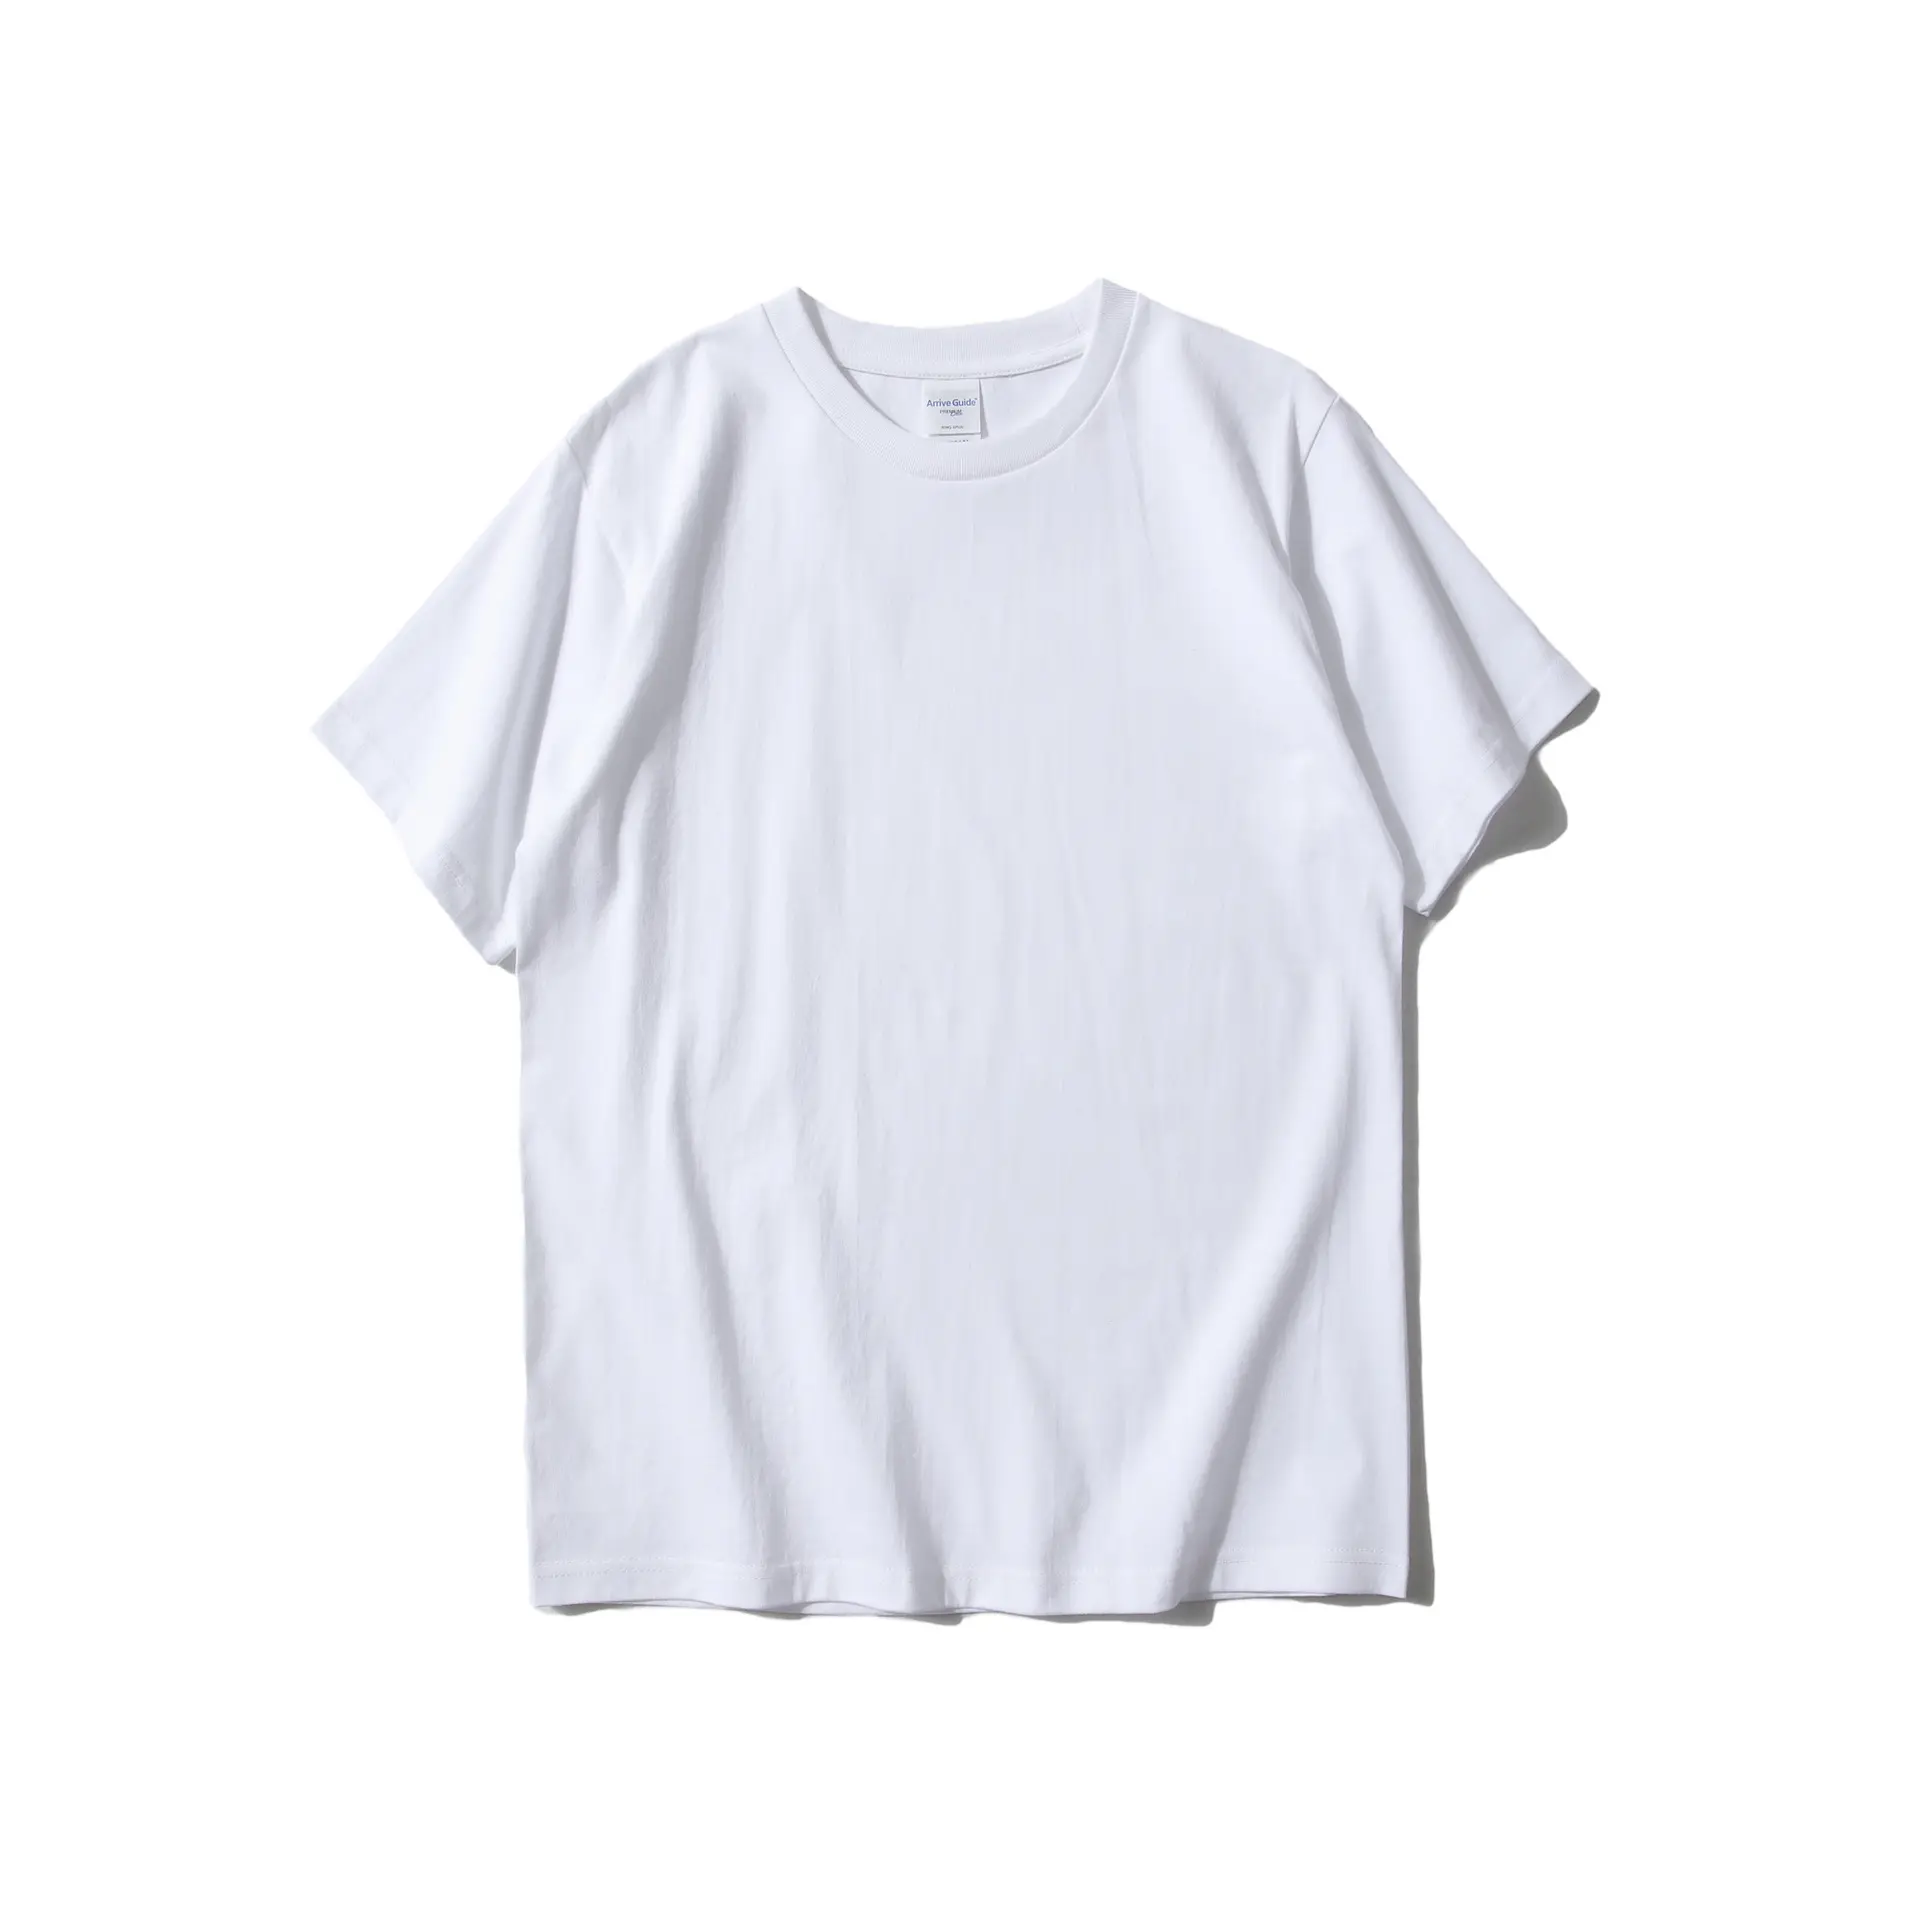 Vedo T-셔츠 도매 미국 크기 주문 로고 인쇄 자수 220GSM 짧은 소매 남녀 공통 도표 면 T-셔츠